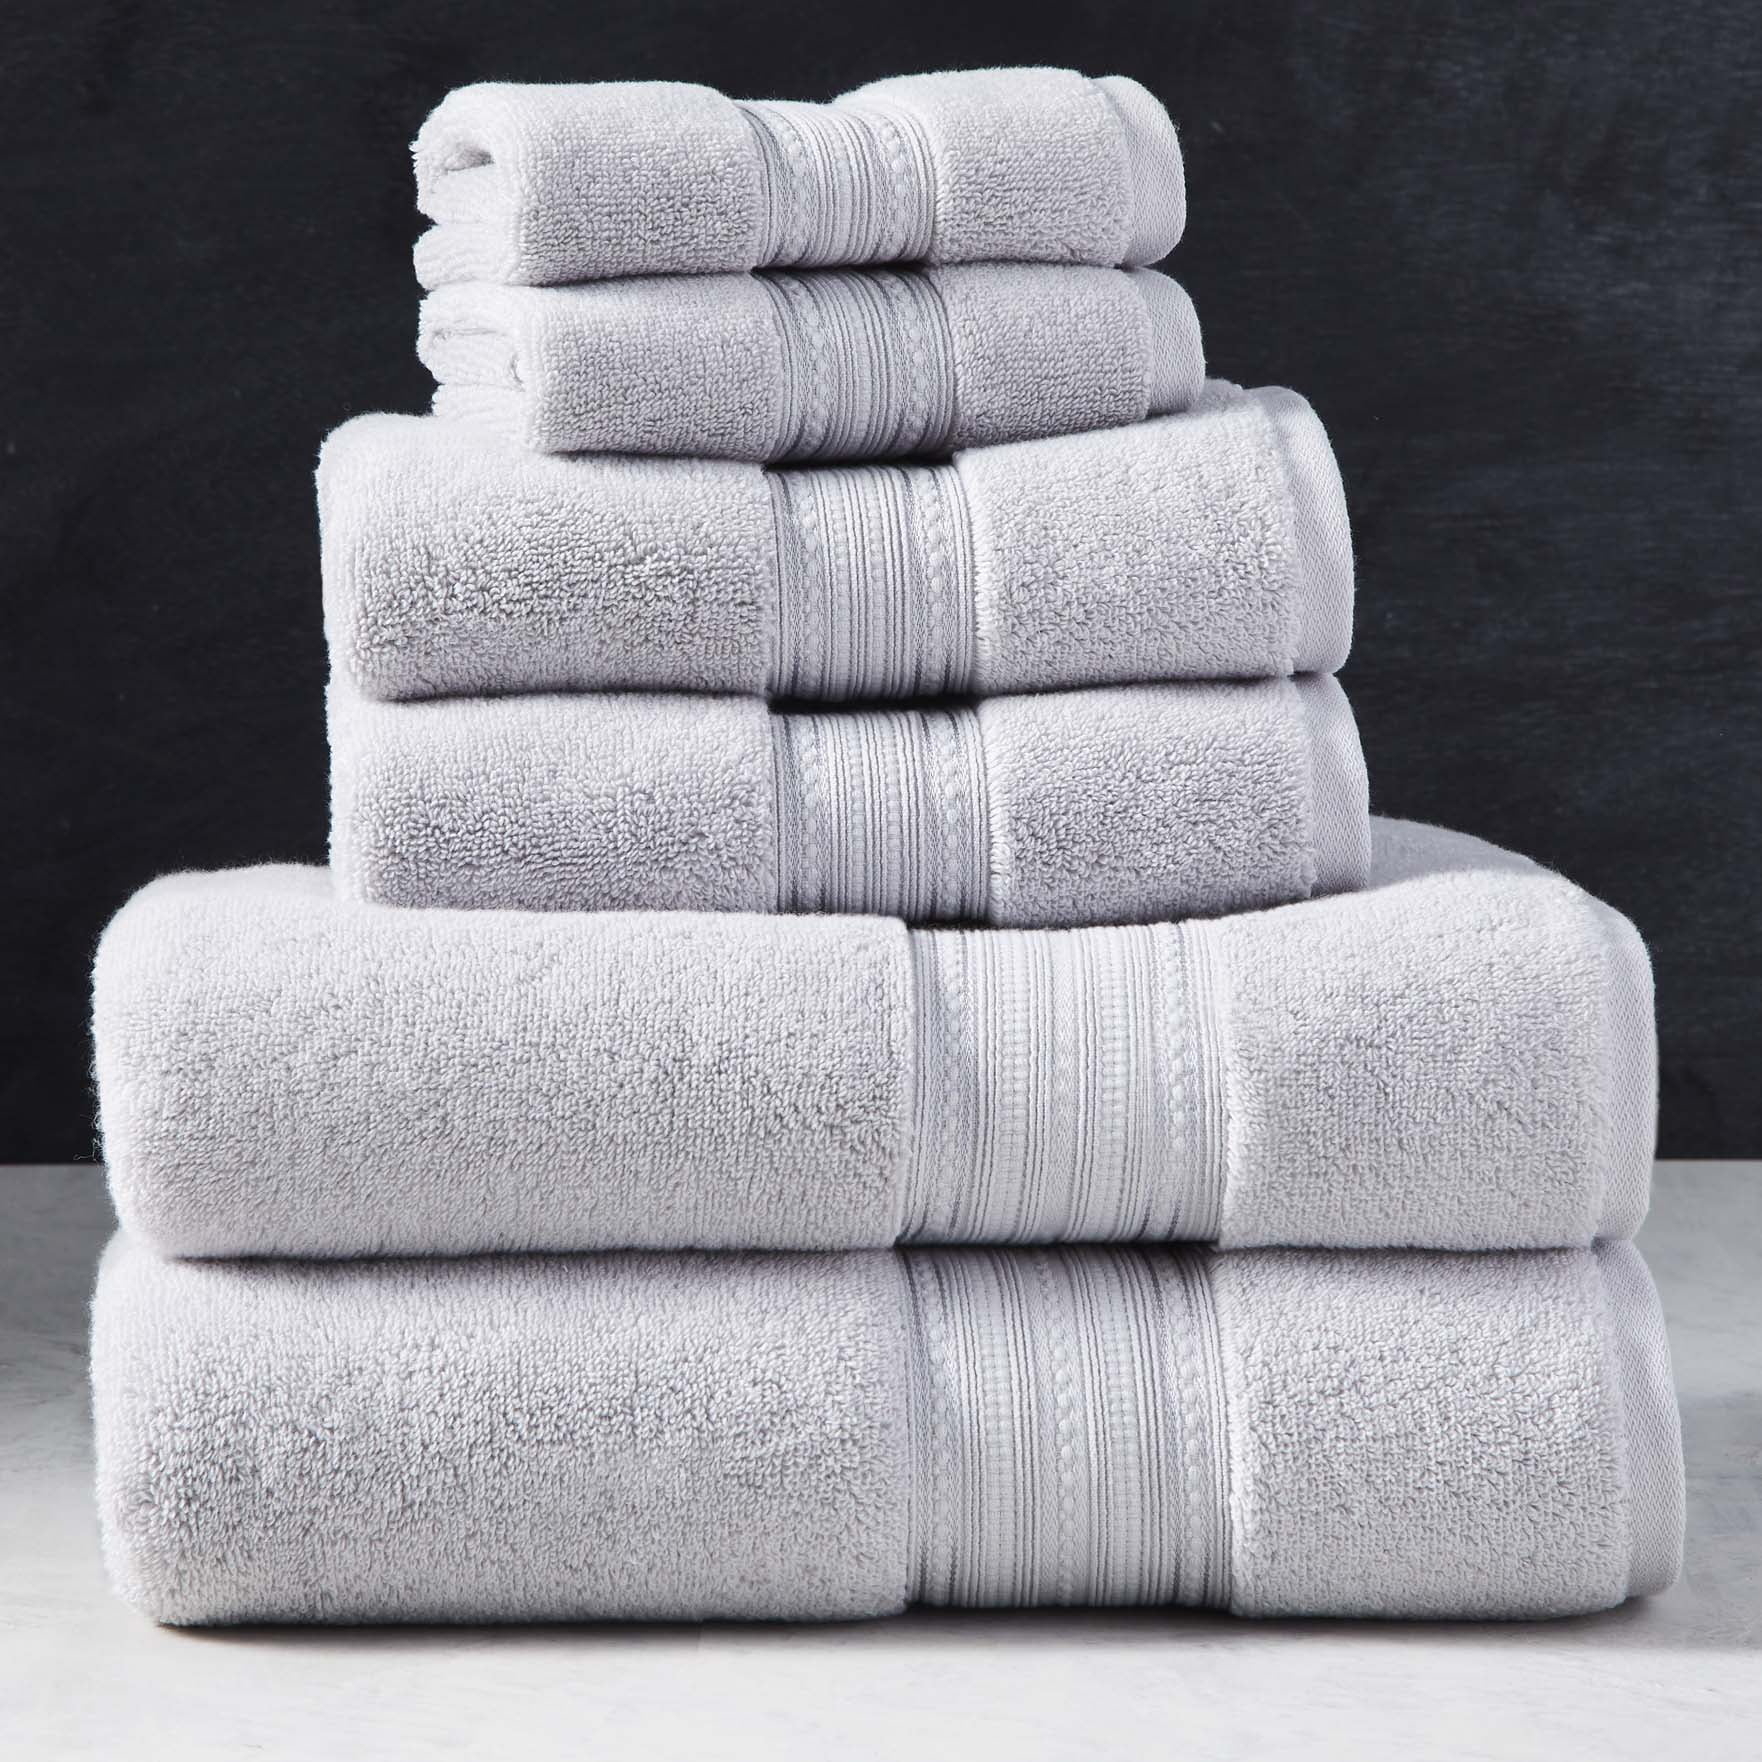 set of gray towels